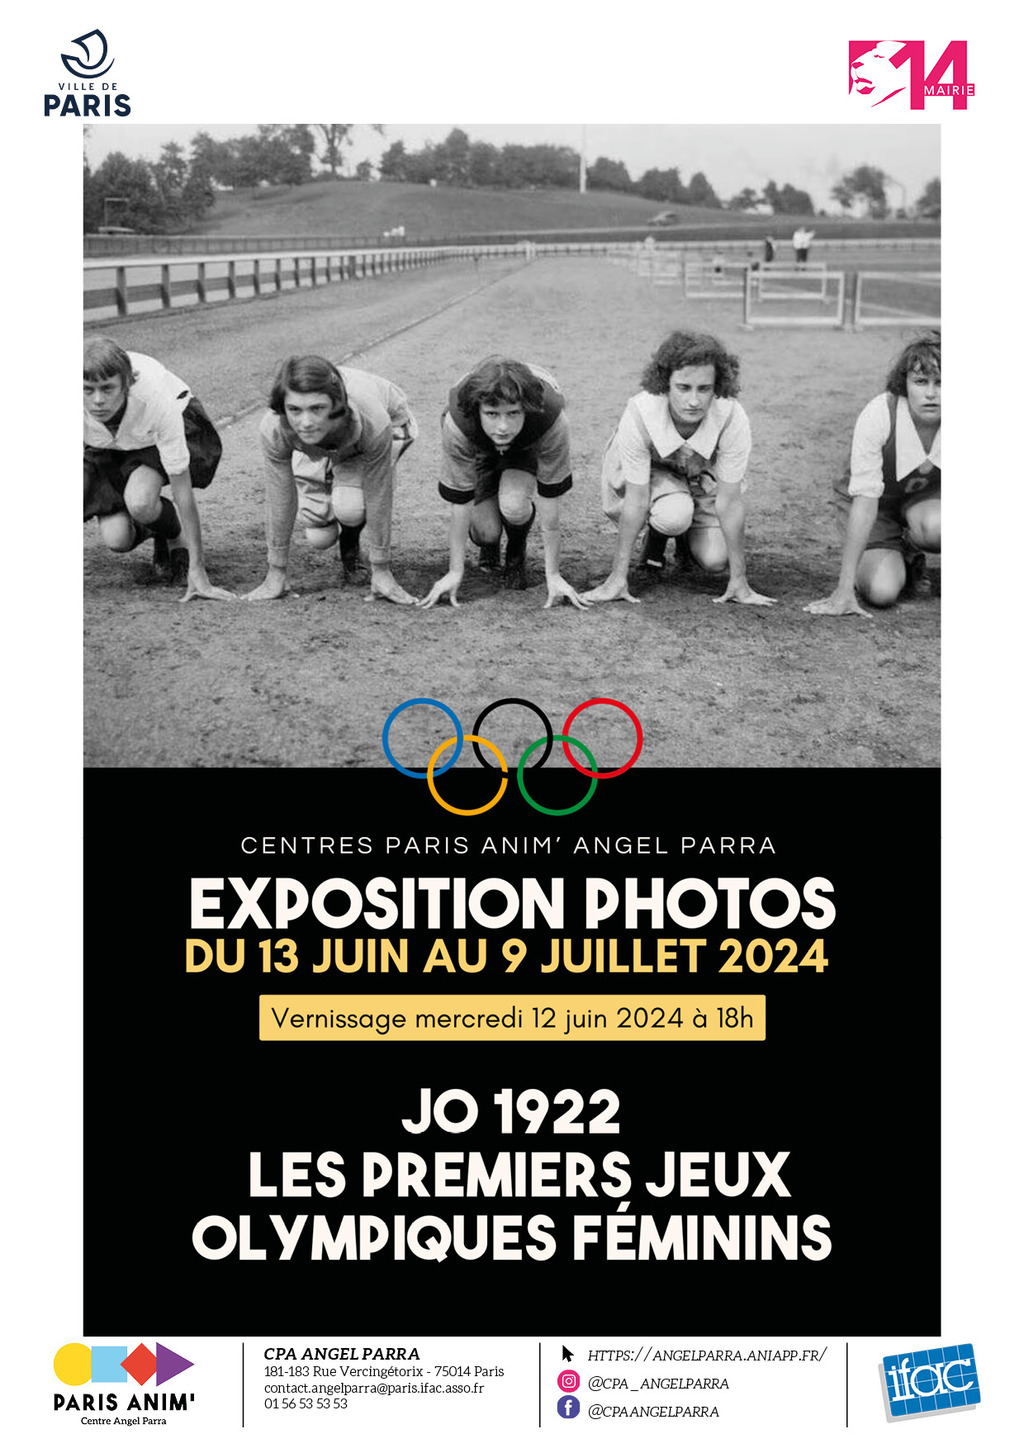 Expo photos : "JO 1922 : Les premiers Jeux Olympiques féminins"